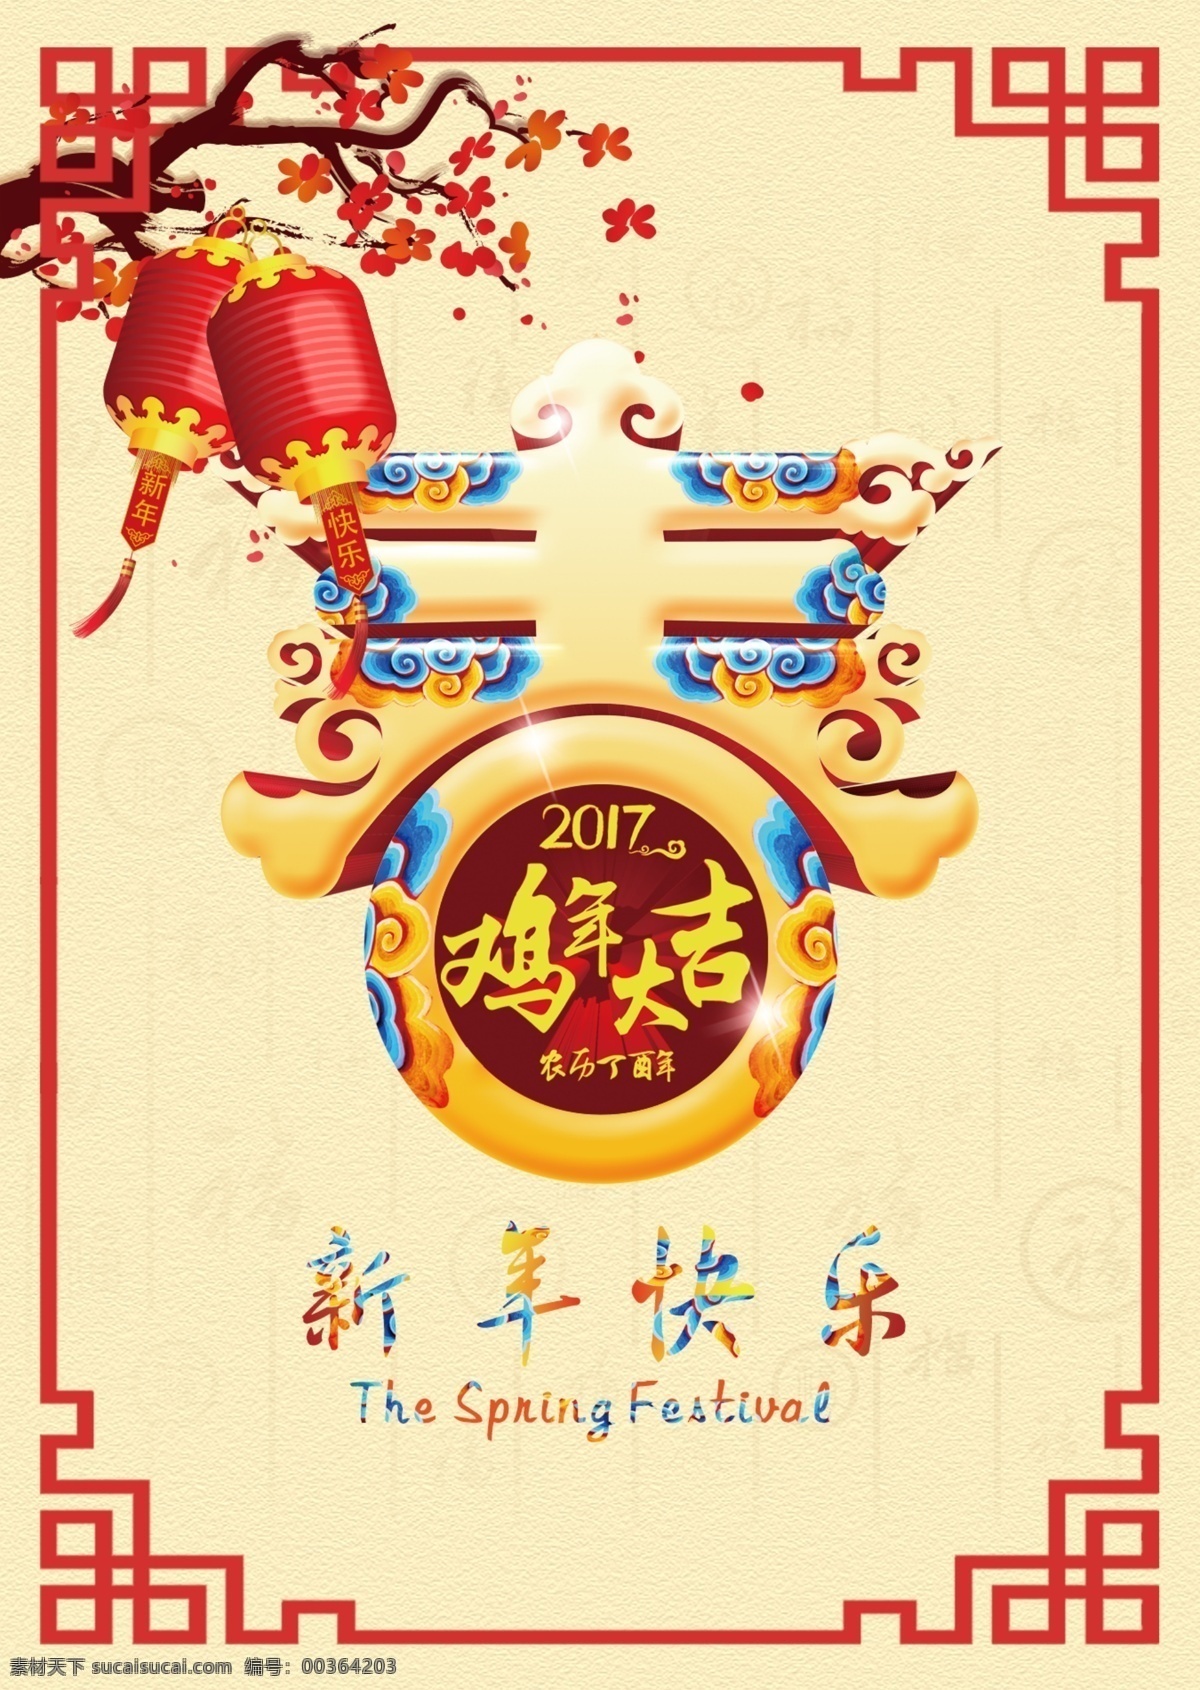 春节 宣传海报 设计素材 鸡年大吉 春节海报 鸡年海报 新年快乐